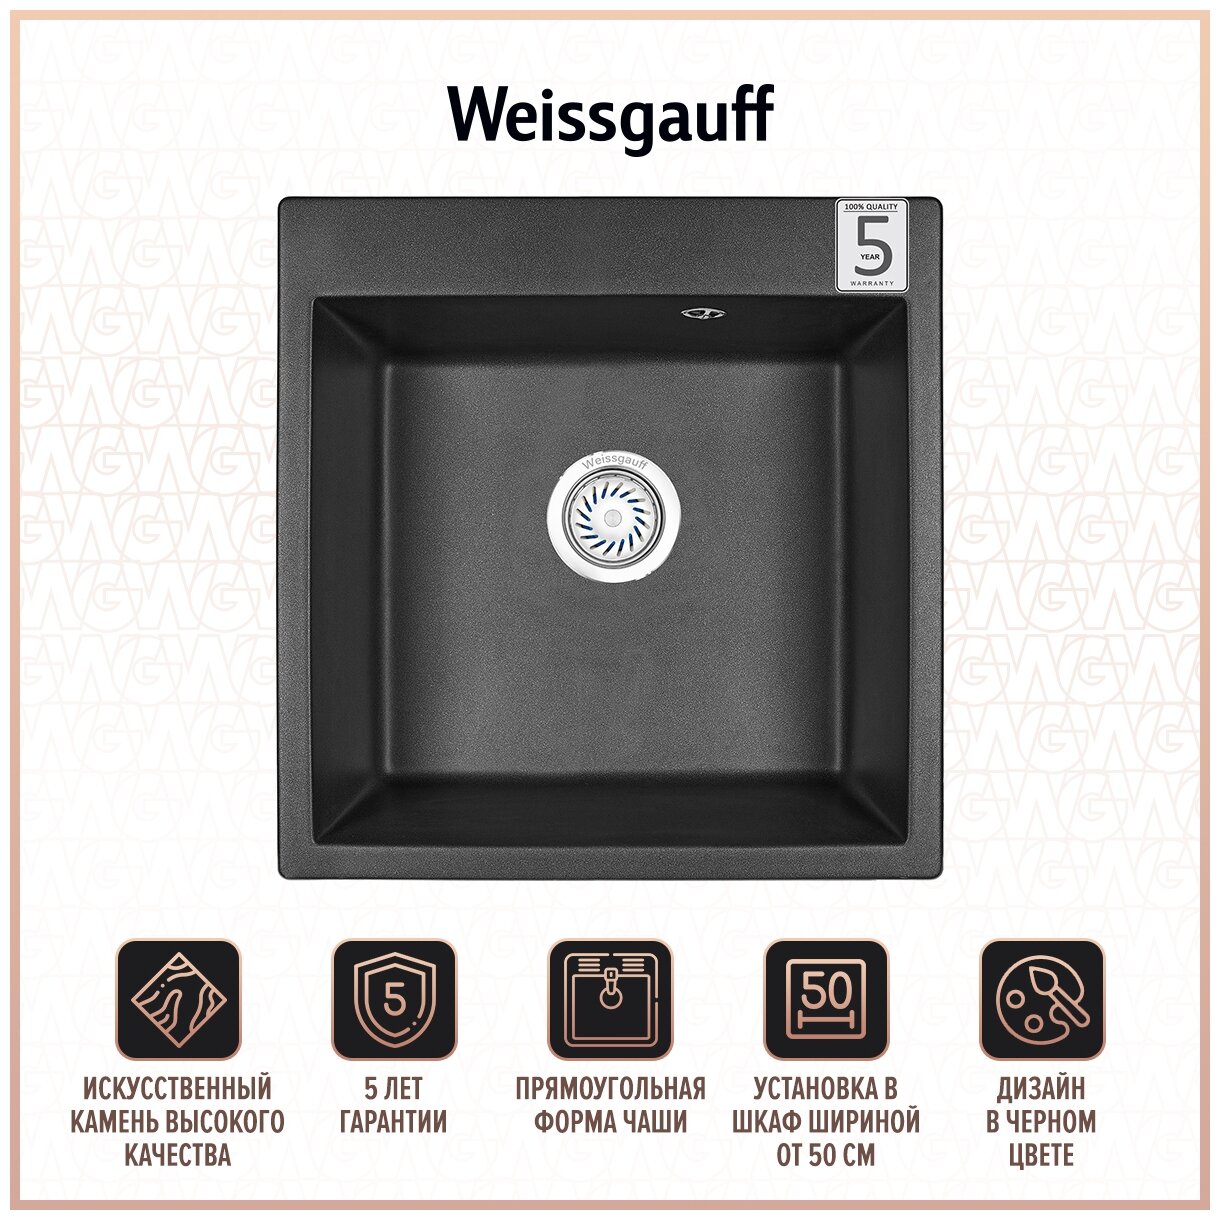 Кухонная мойка Weissgauff WG 5001 черный (429357)